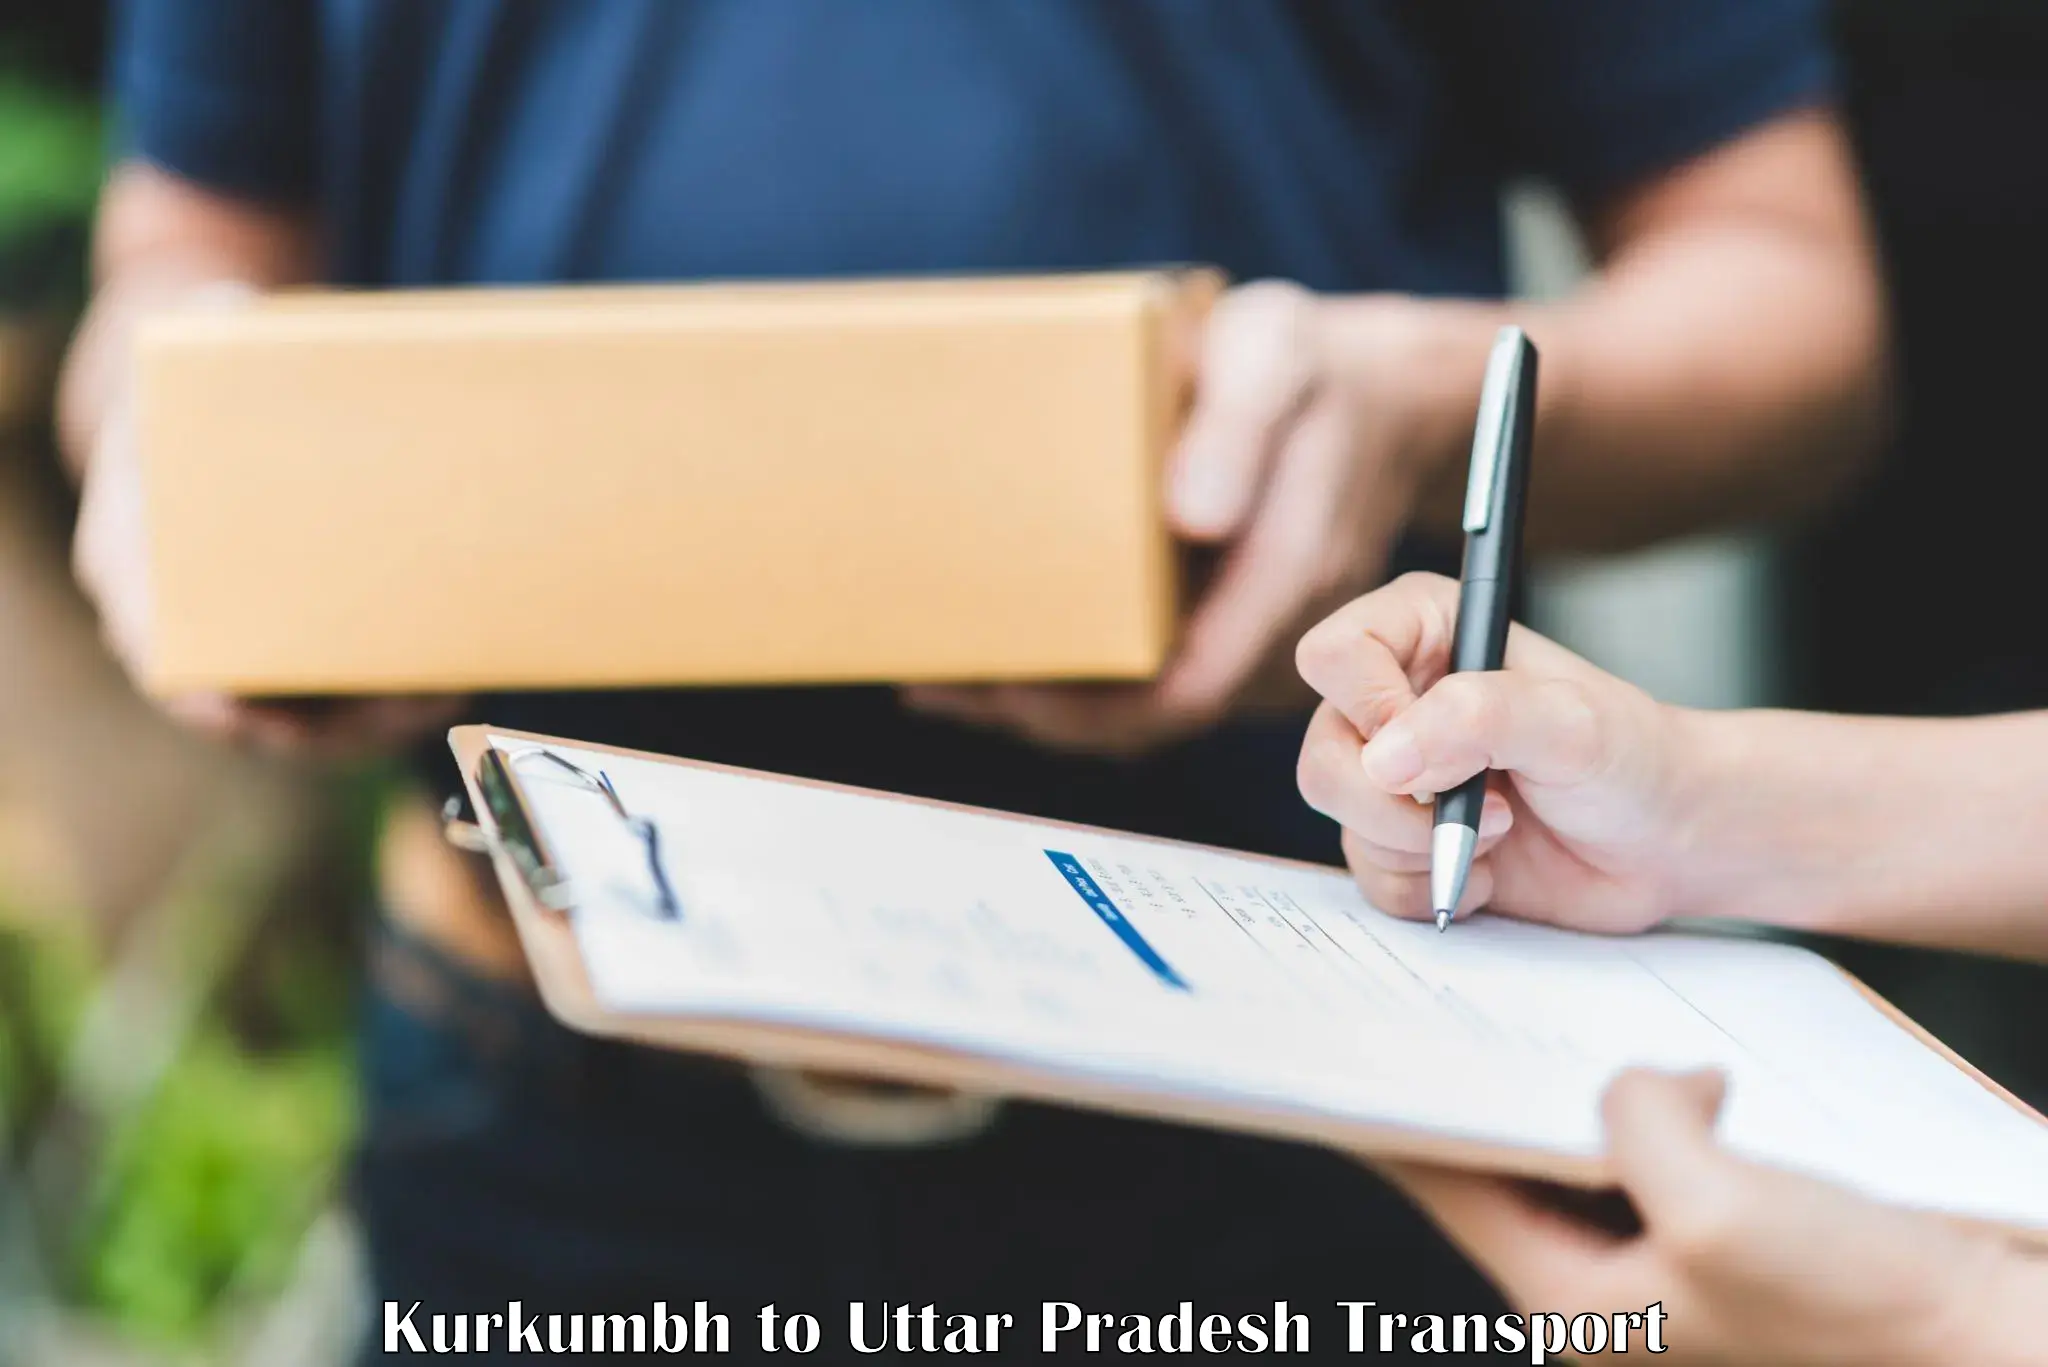 Lorry transport service Kurkumbh to Dibai